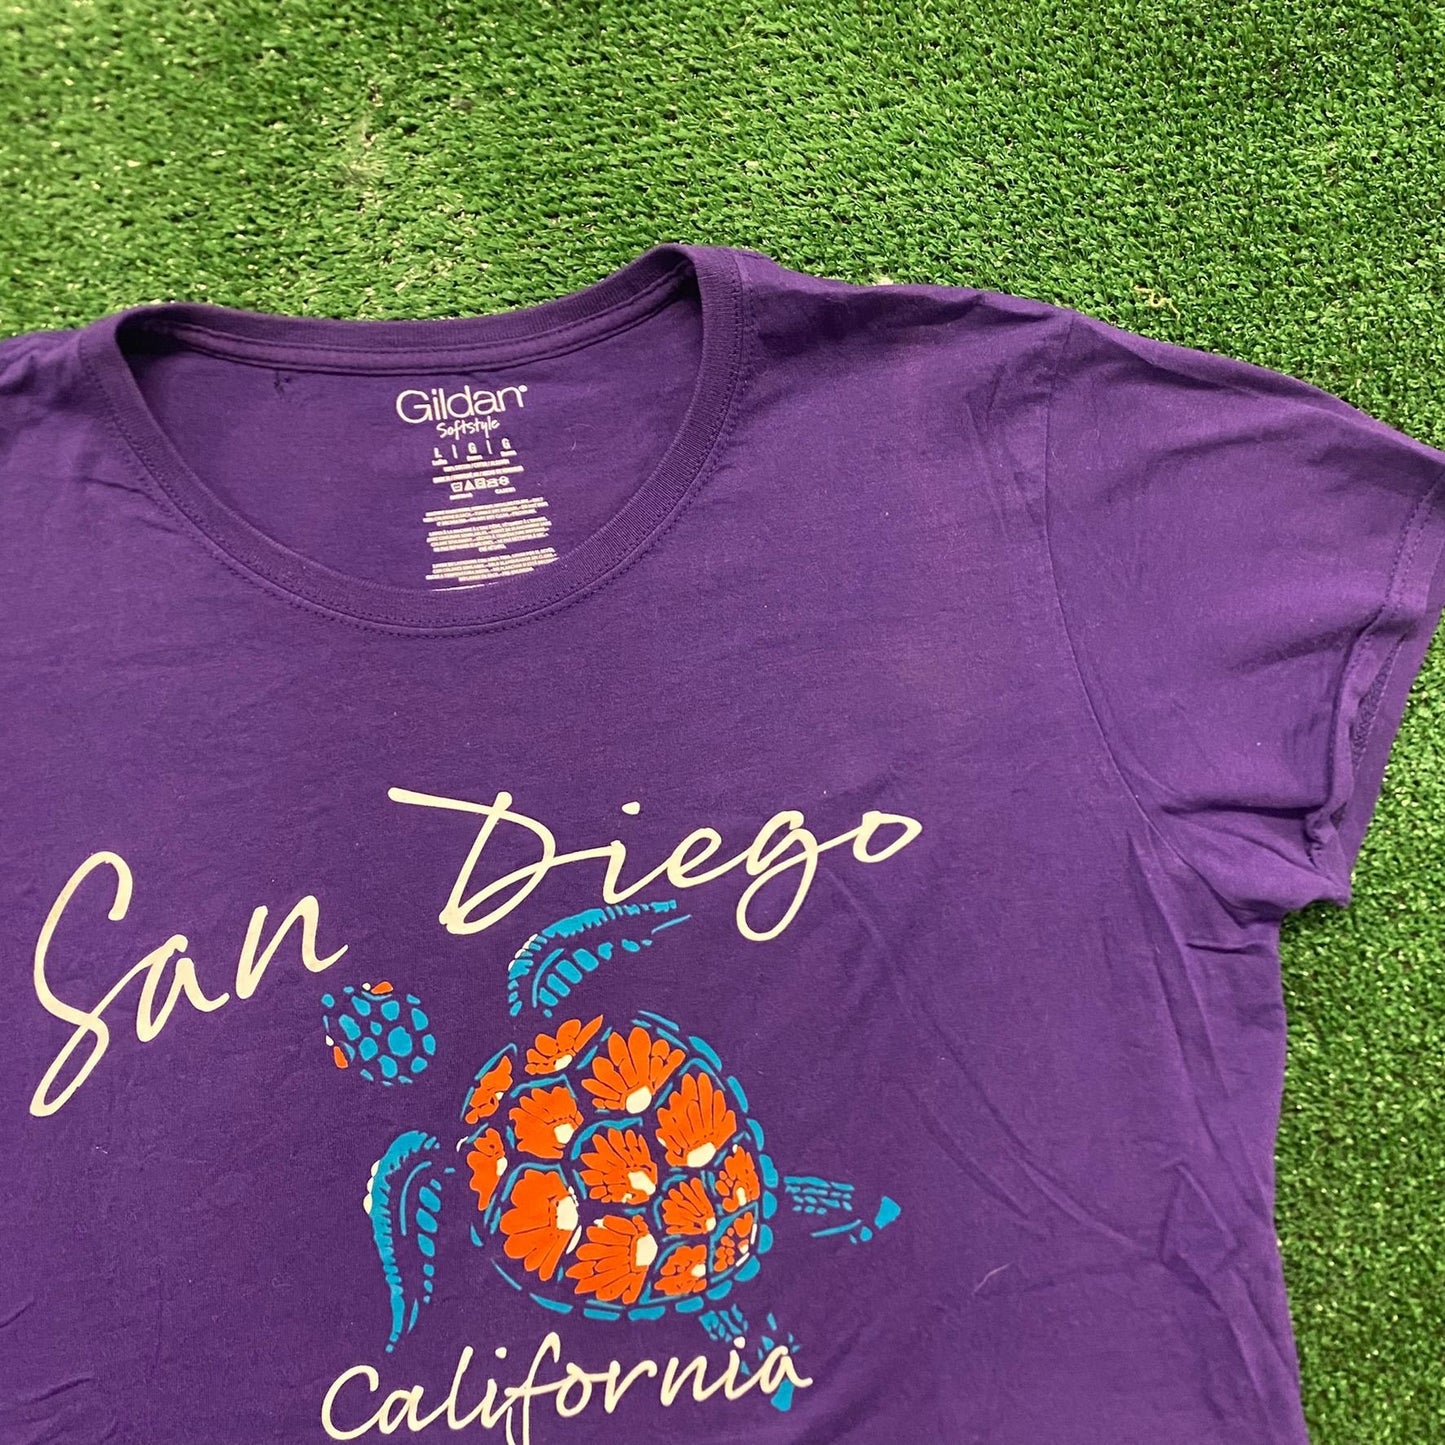 San Diego Sea Turtle Vintage Animals Nature T-Shirt